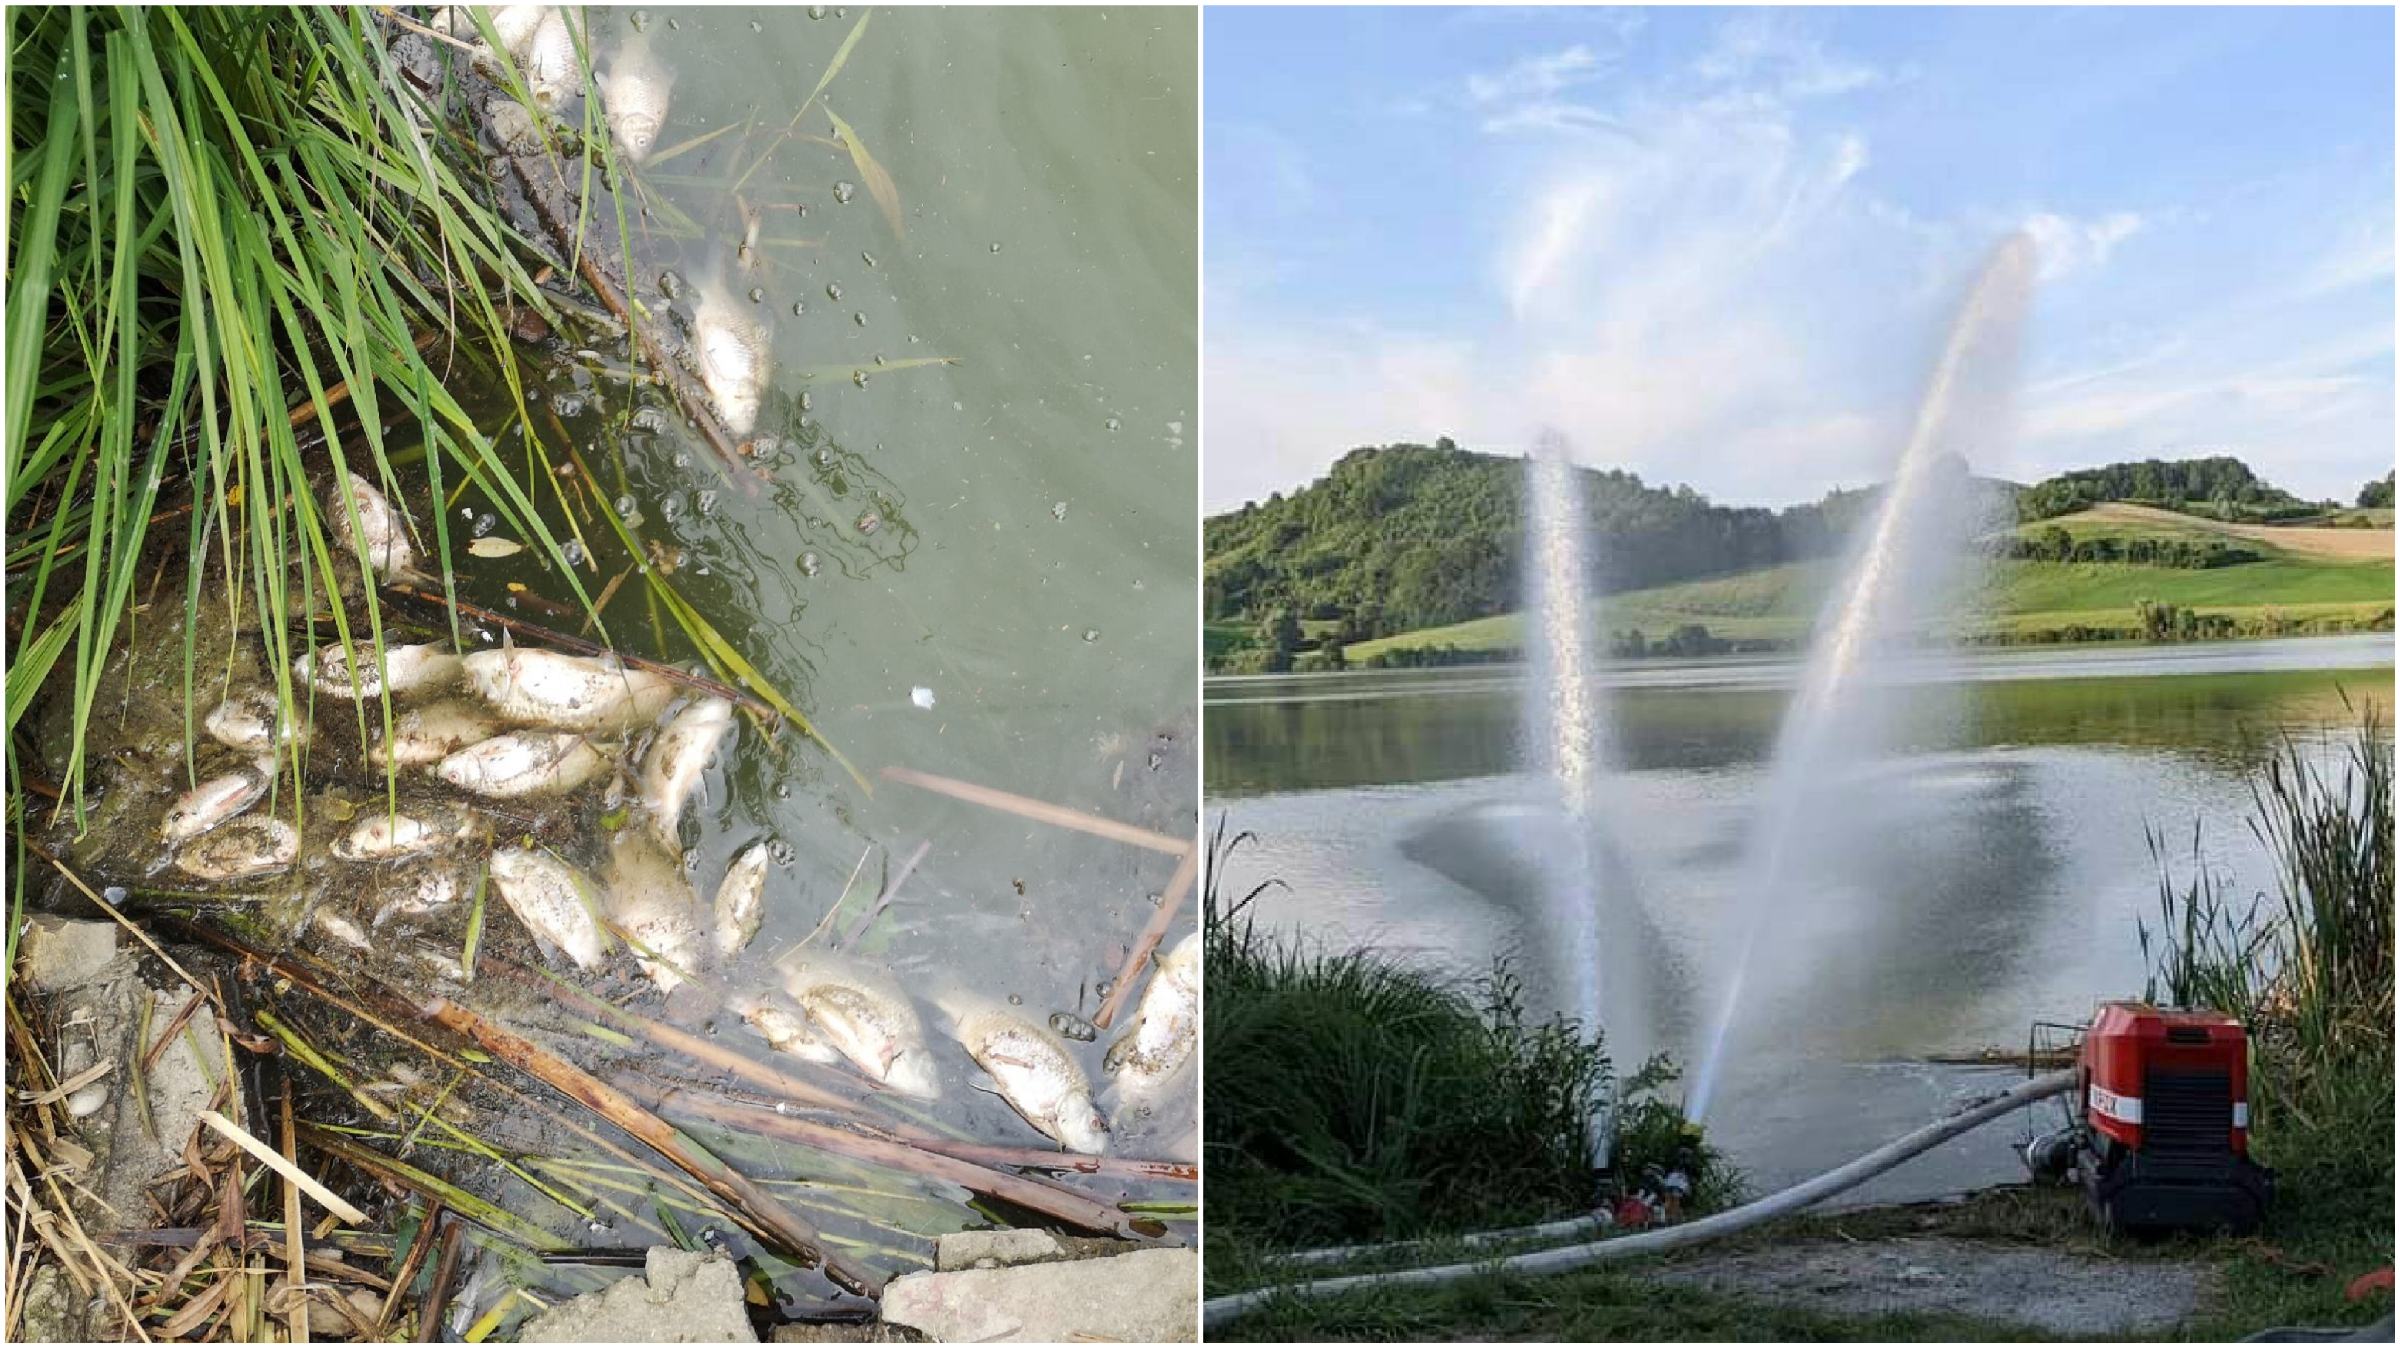 DNEVNA: Alge v Perniškem jezeru krive za nov množični pogin rib